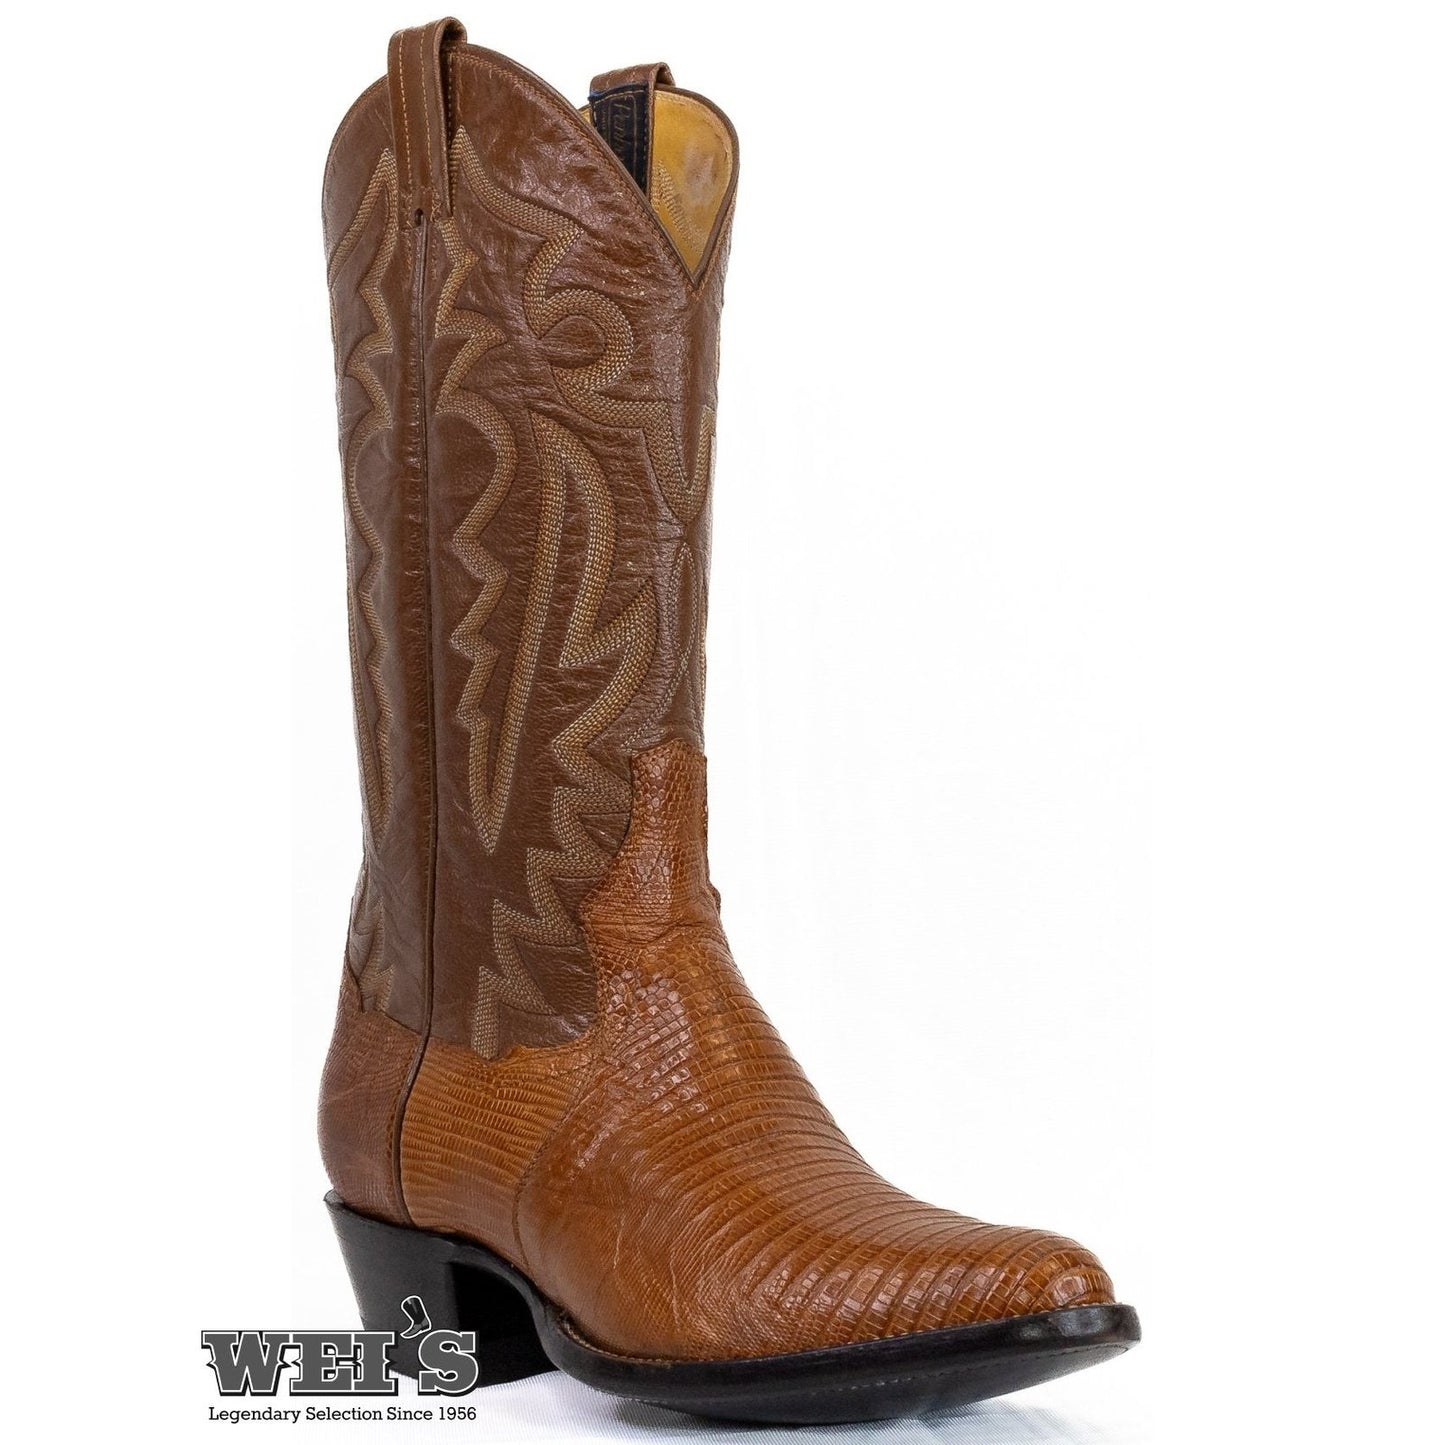 Panhandle Slim Men's Cowboy Boots 14" Exotic Lizard Nut 5-LIZARD 25654